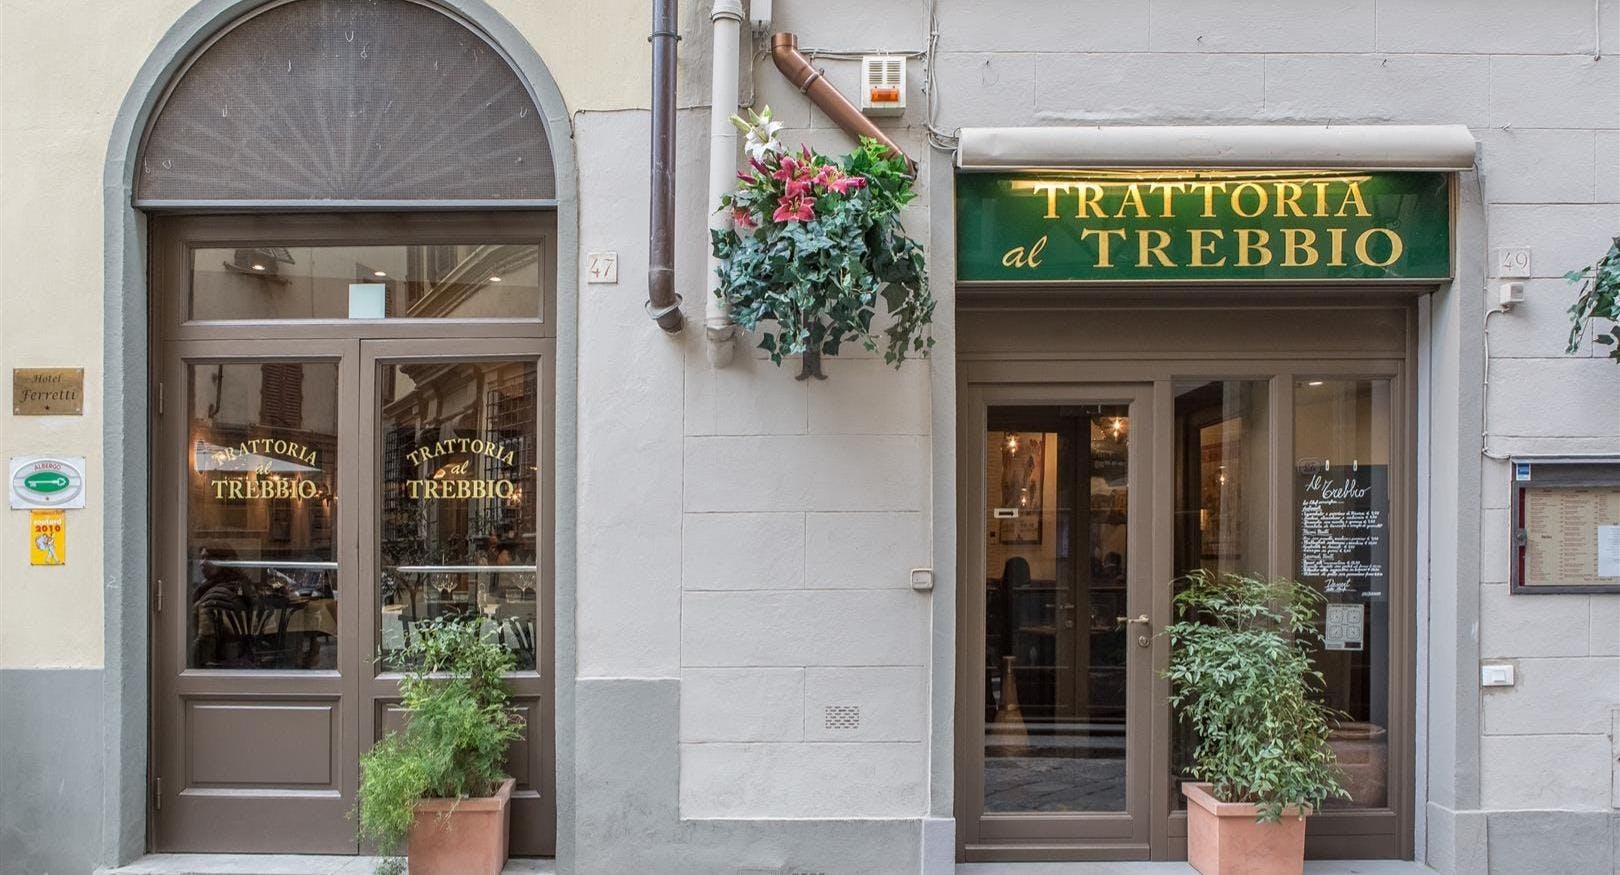 Photo of restaurant Trattoria Marione Al Trebbio in Centro storico, Florence